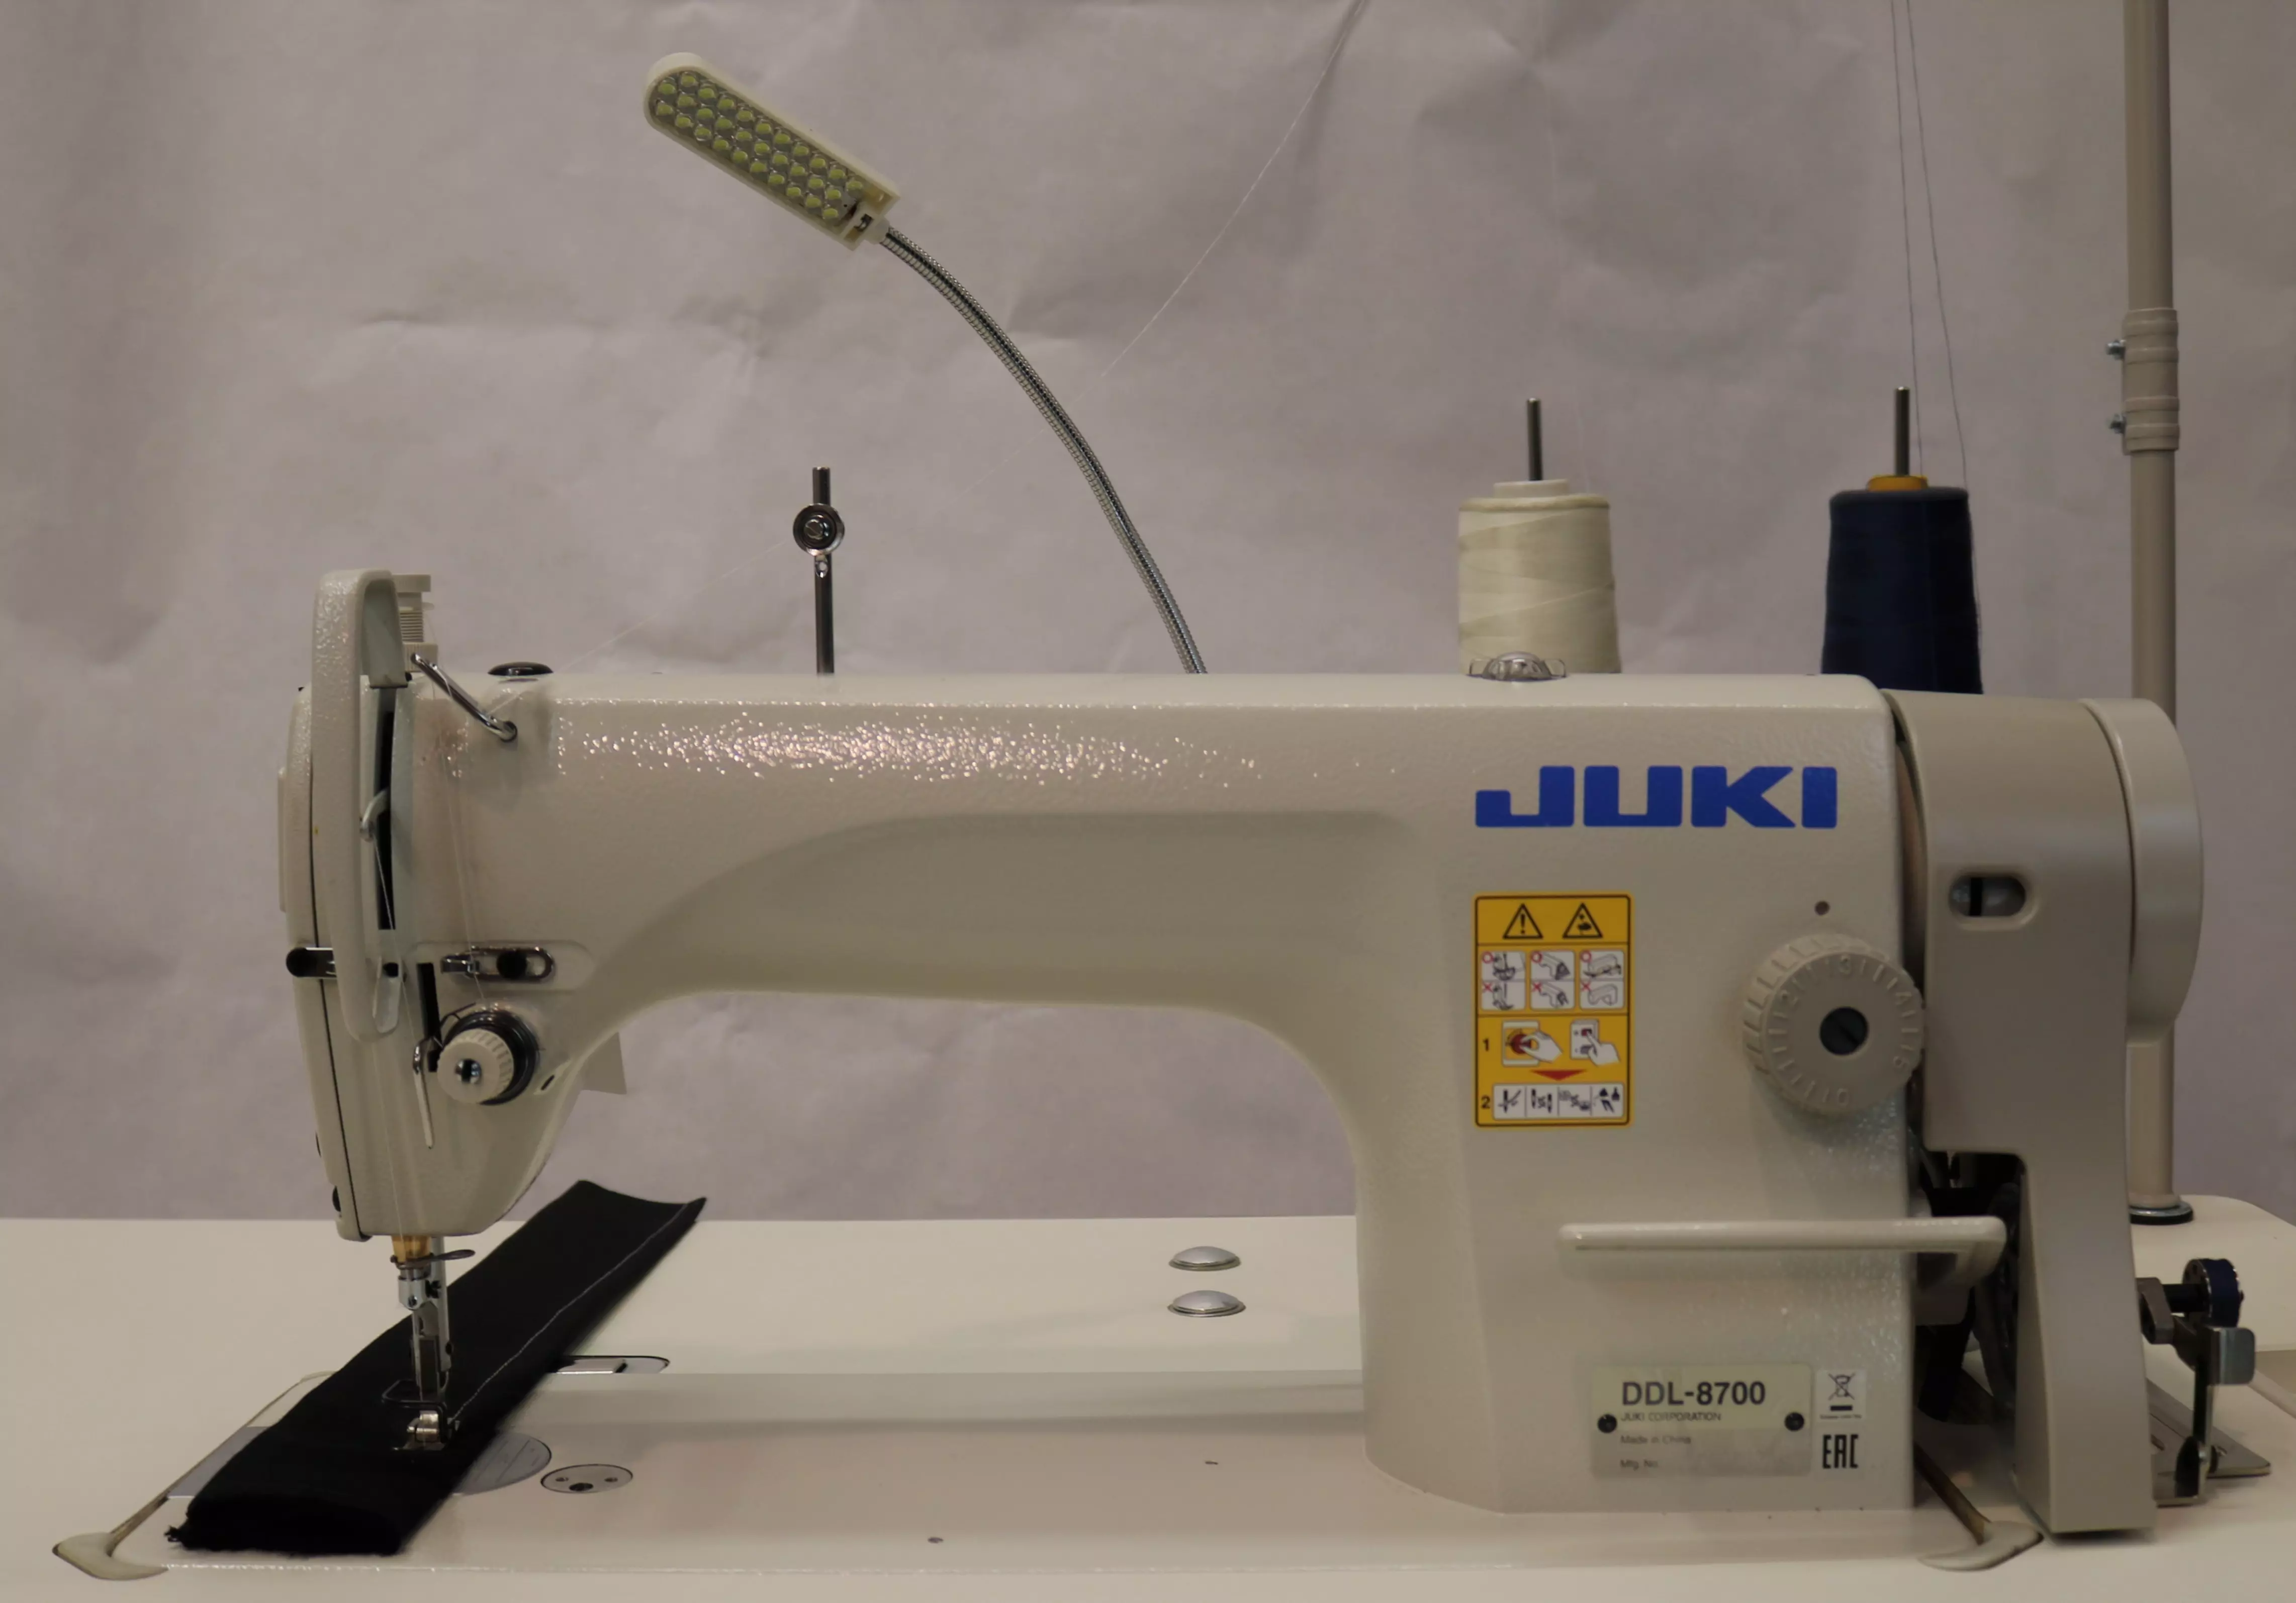 Купить машинку джуки. Промышленная швейная машина Juki DDL-8700h. Швейная машинка Juki DDL 8700. Швейная машинка Джуки 8700. Juki 8700-h Промышленная швейная машина.